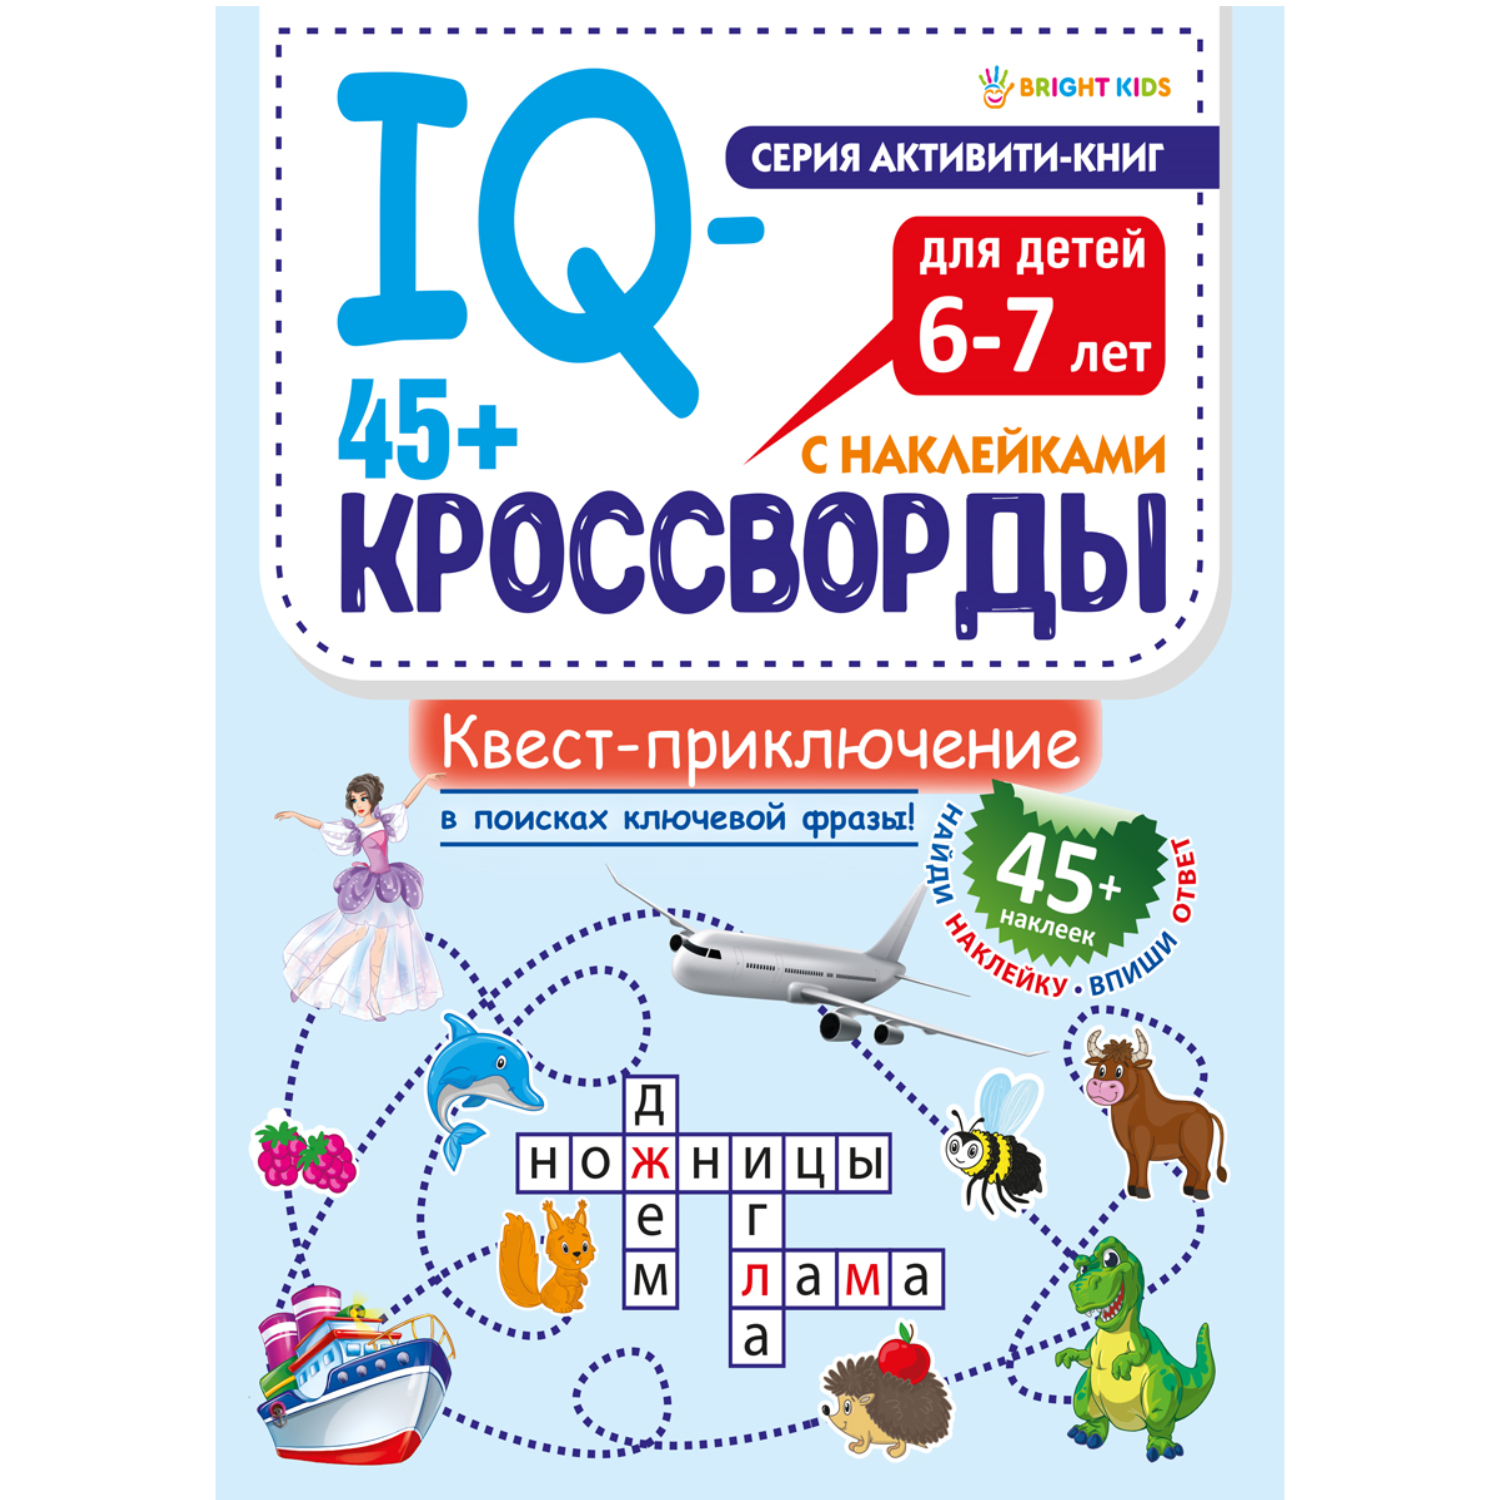 IQ-кроссворды Bright Kids Квест-приключение А4 12 листов + 2 листа с наклейками - фото 1